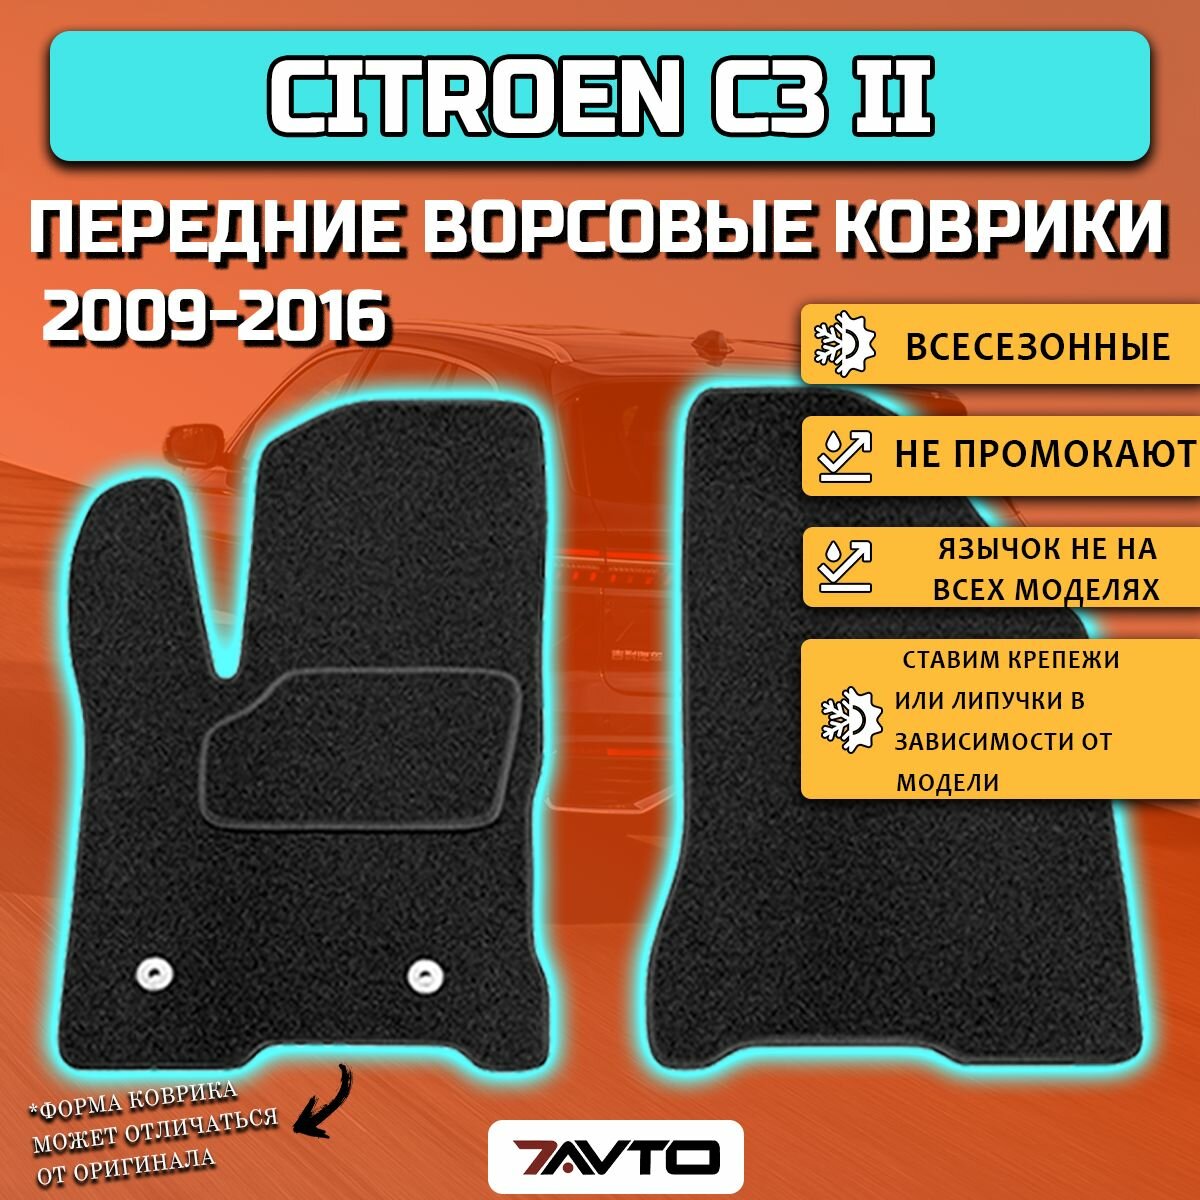 Передние ворсовые коврики ECO на Citroen C3 II 2009-2016 / Ситроен Ц3